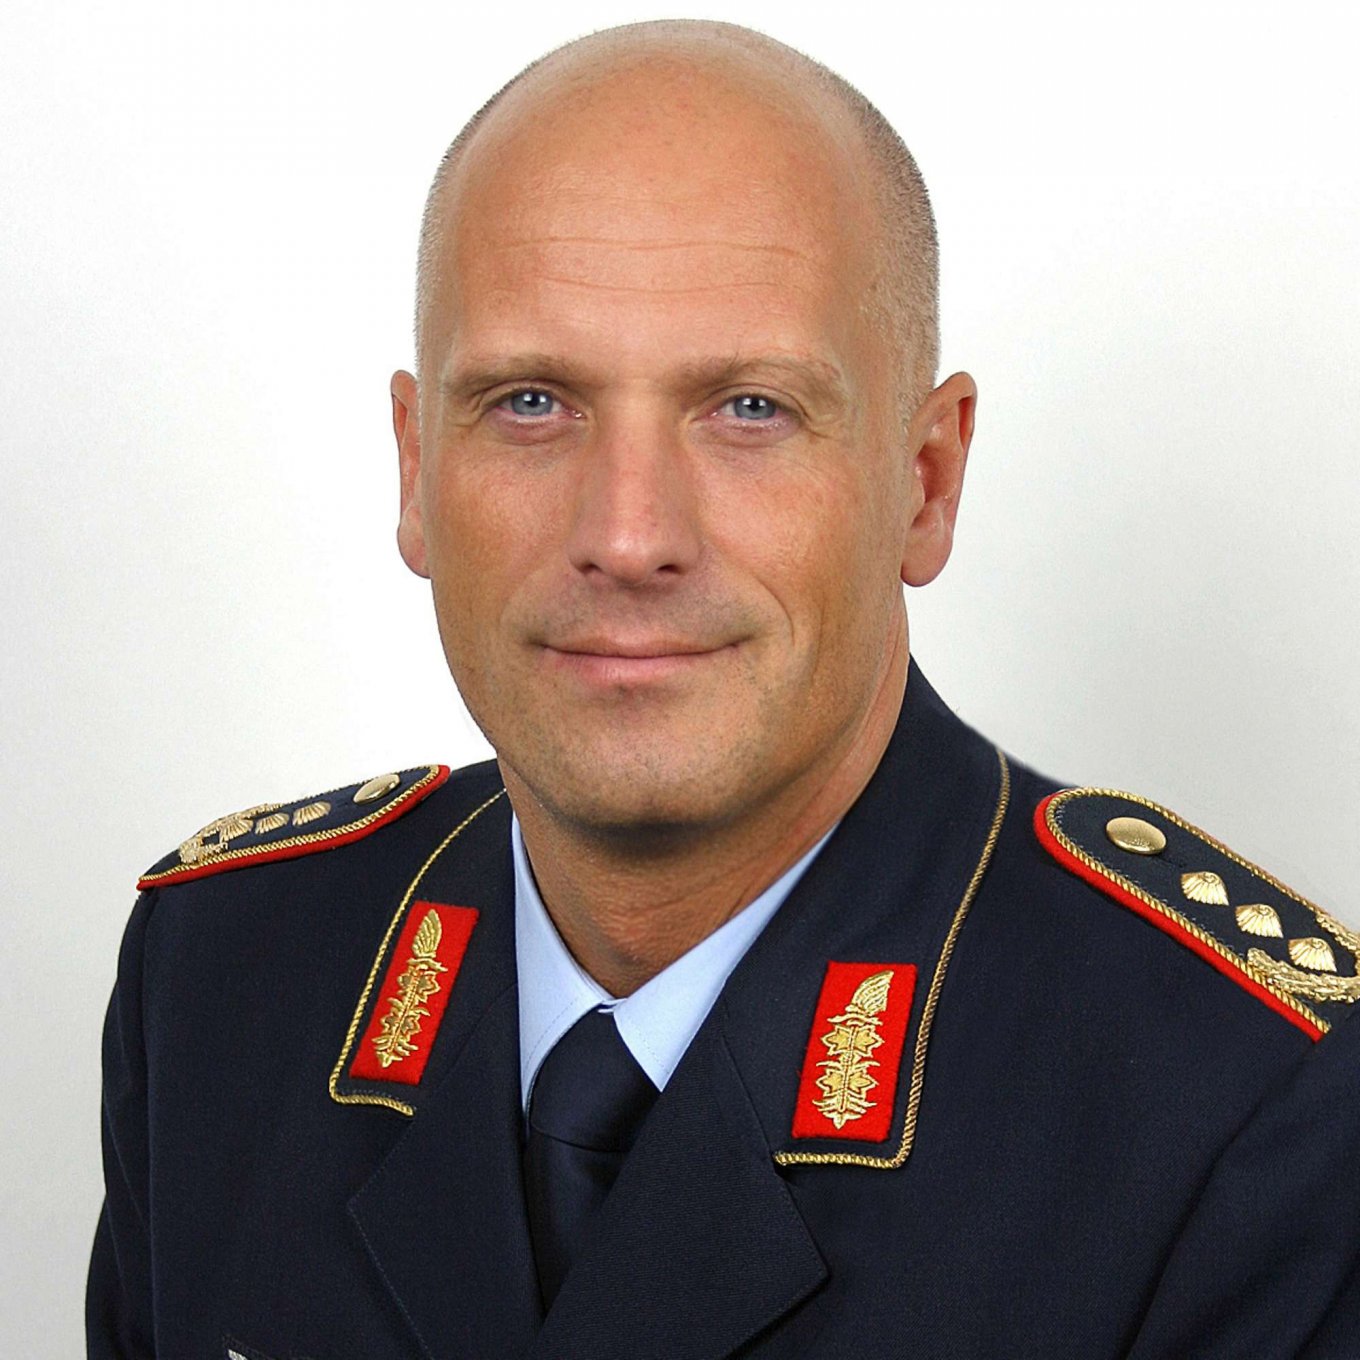 Ingo Gerhartz, the Inspector (chief commander) of the German Luftwaffe